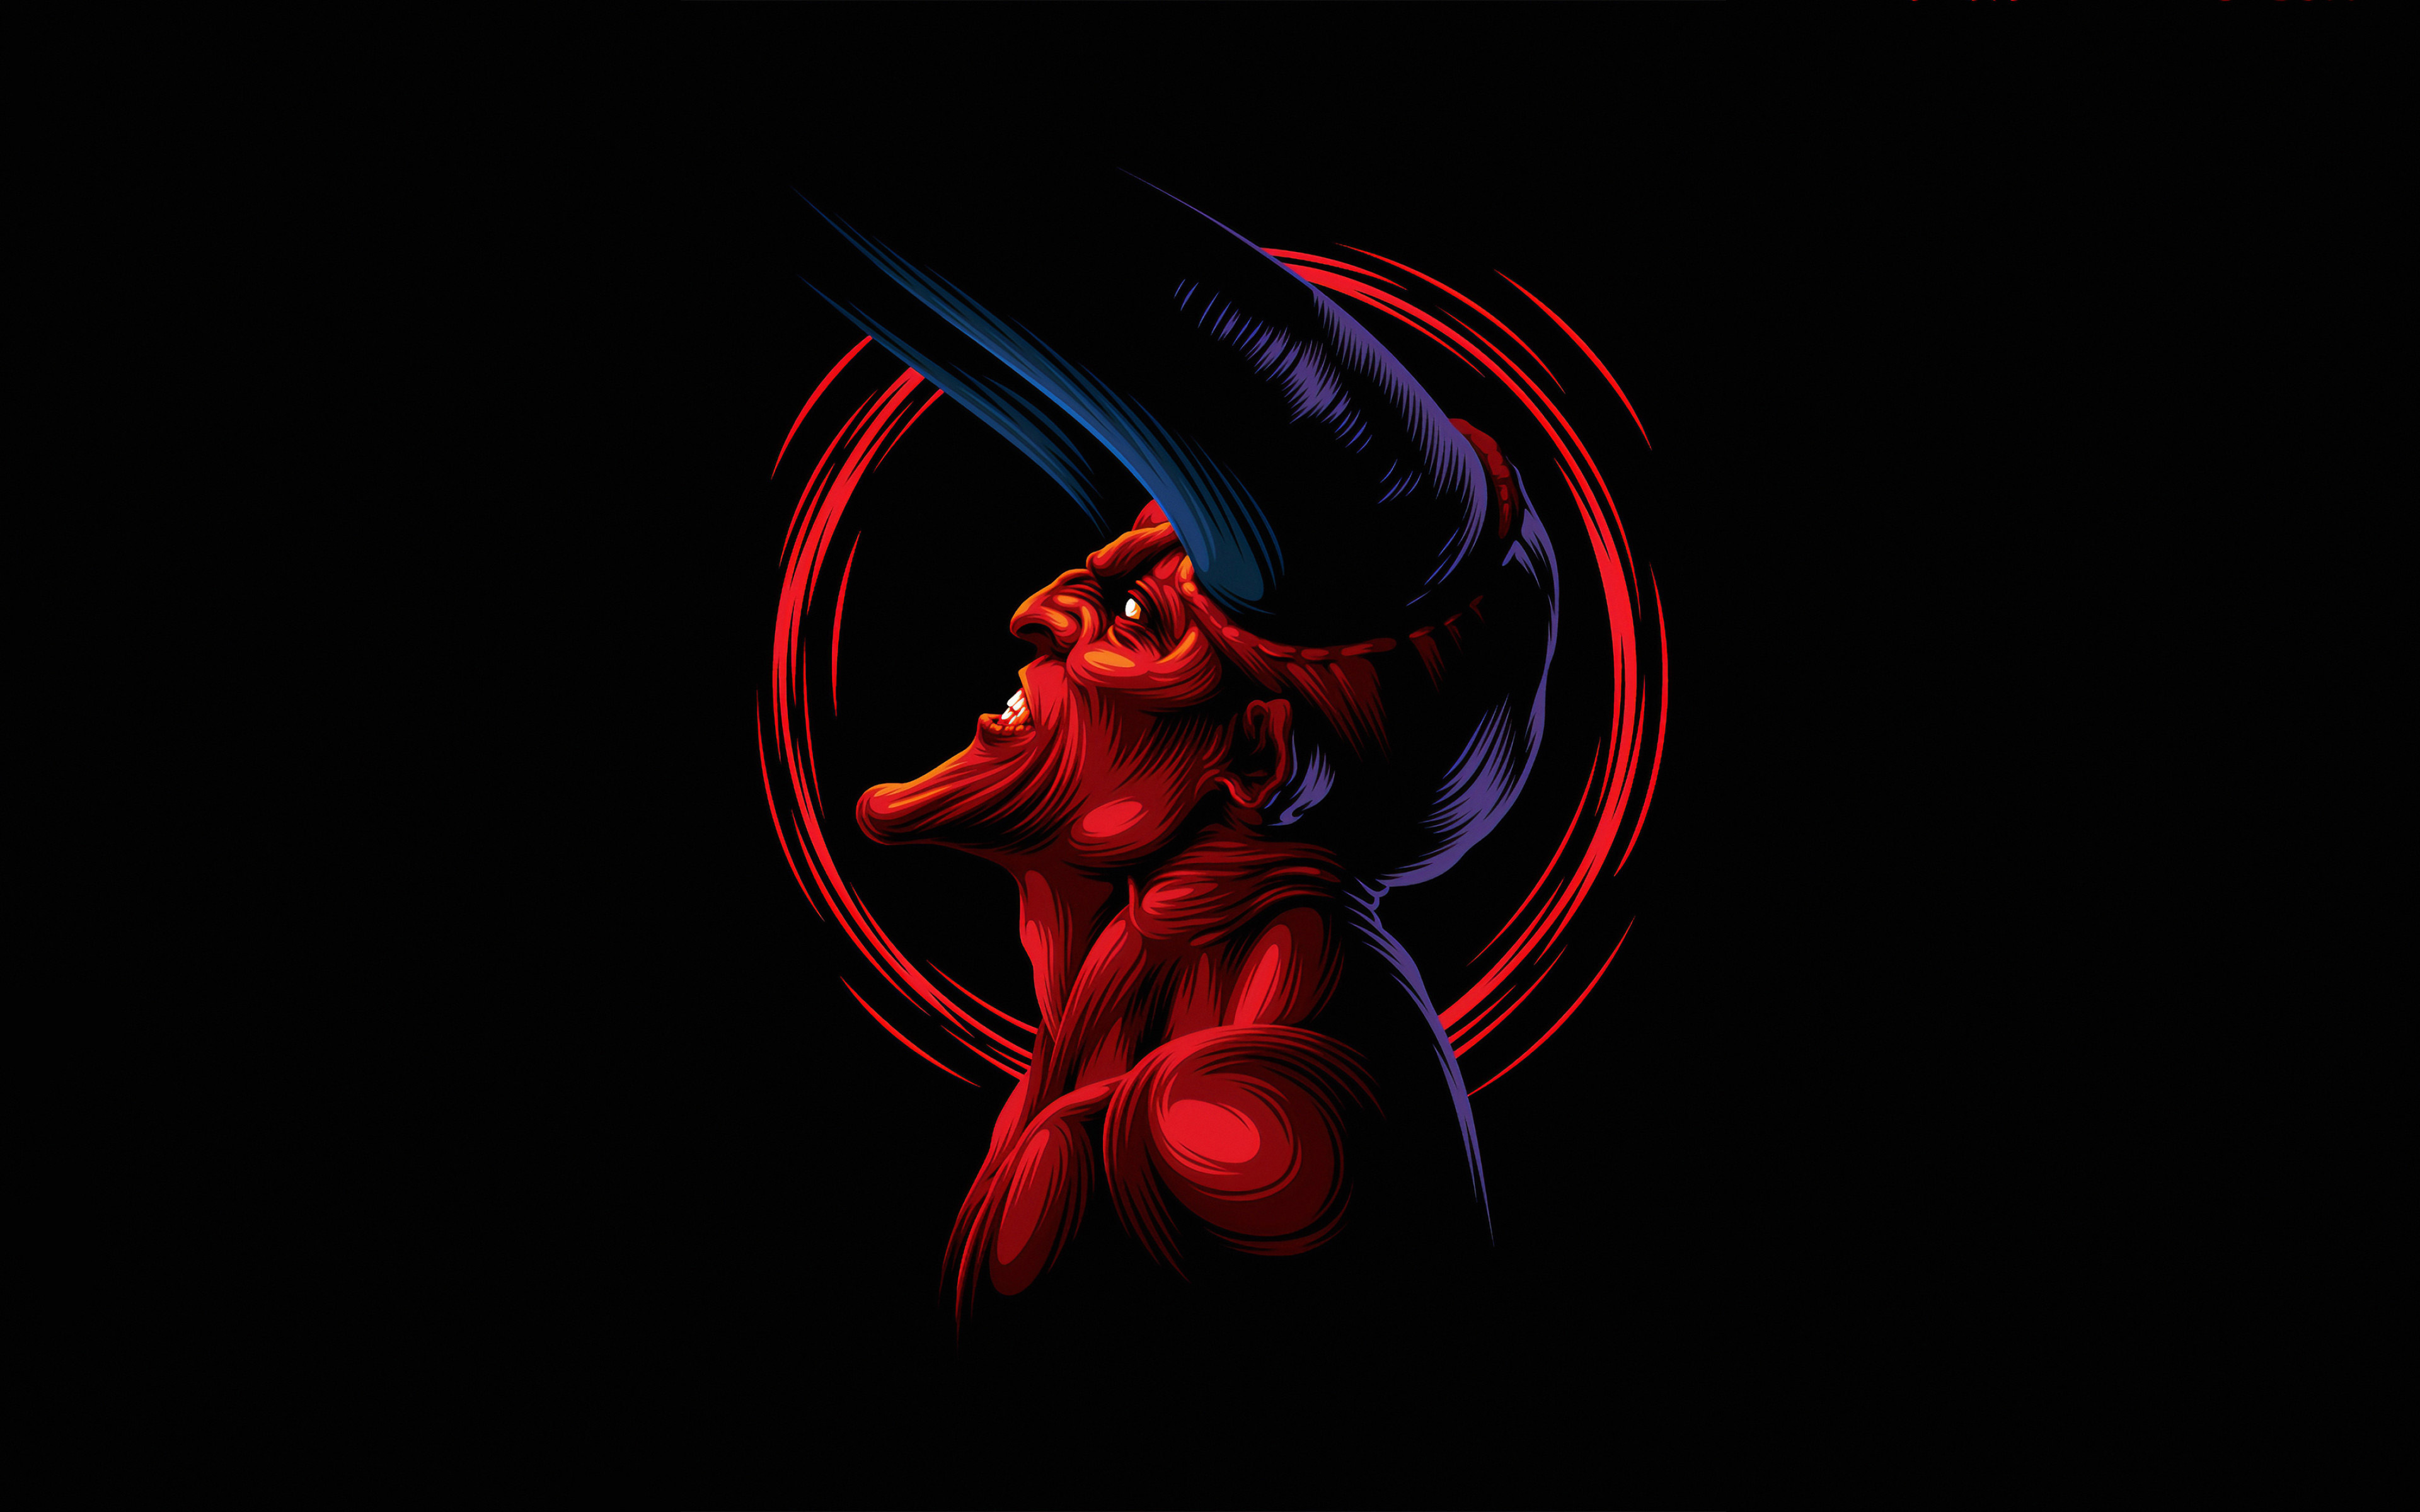 Download wallpapers red devil, 4k, minimal, monster, black background, devi...